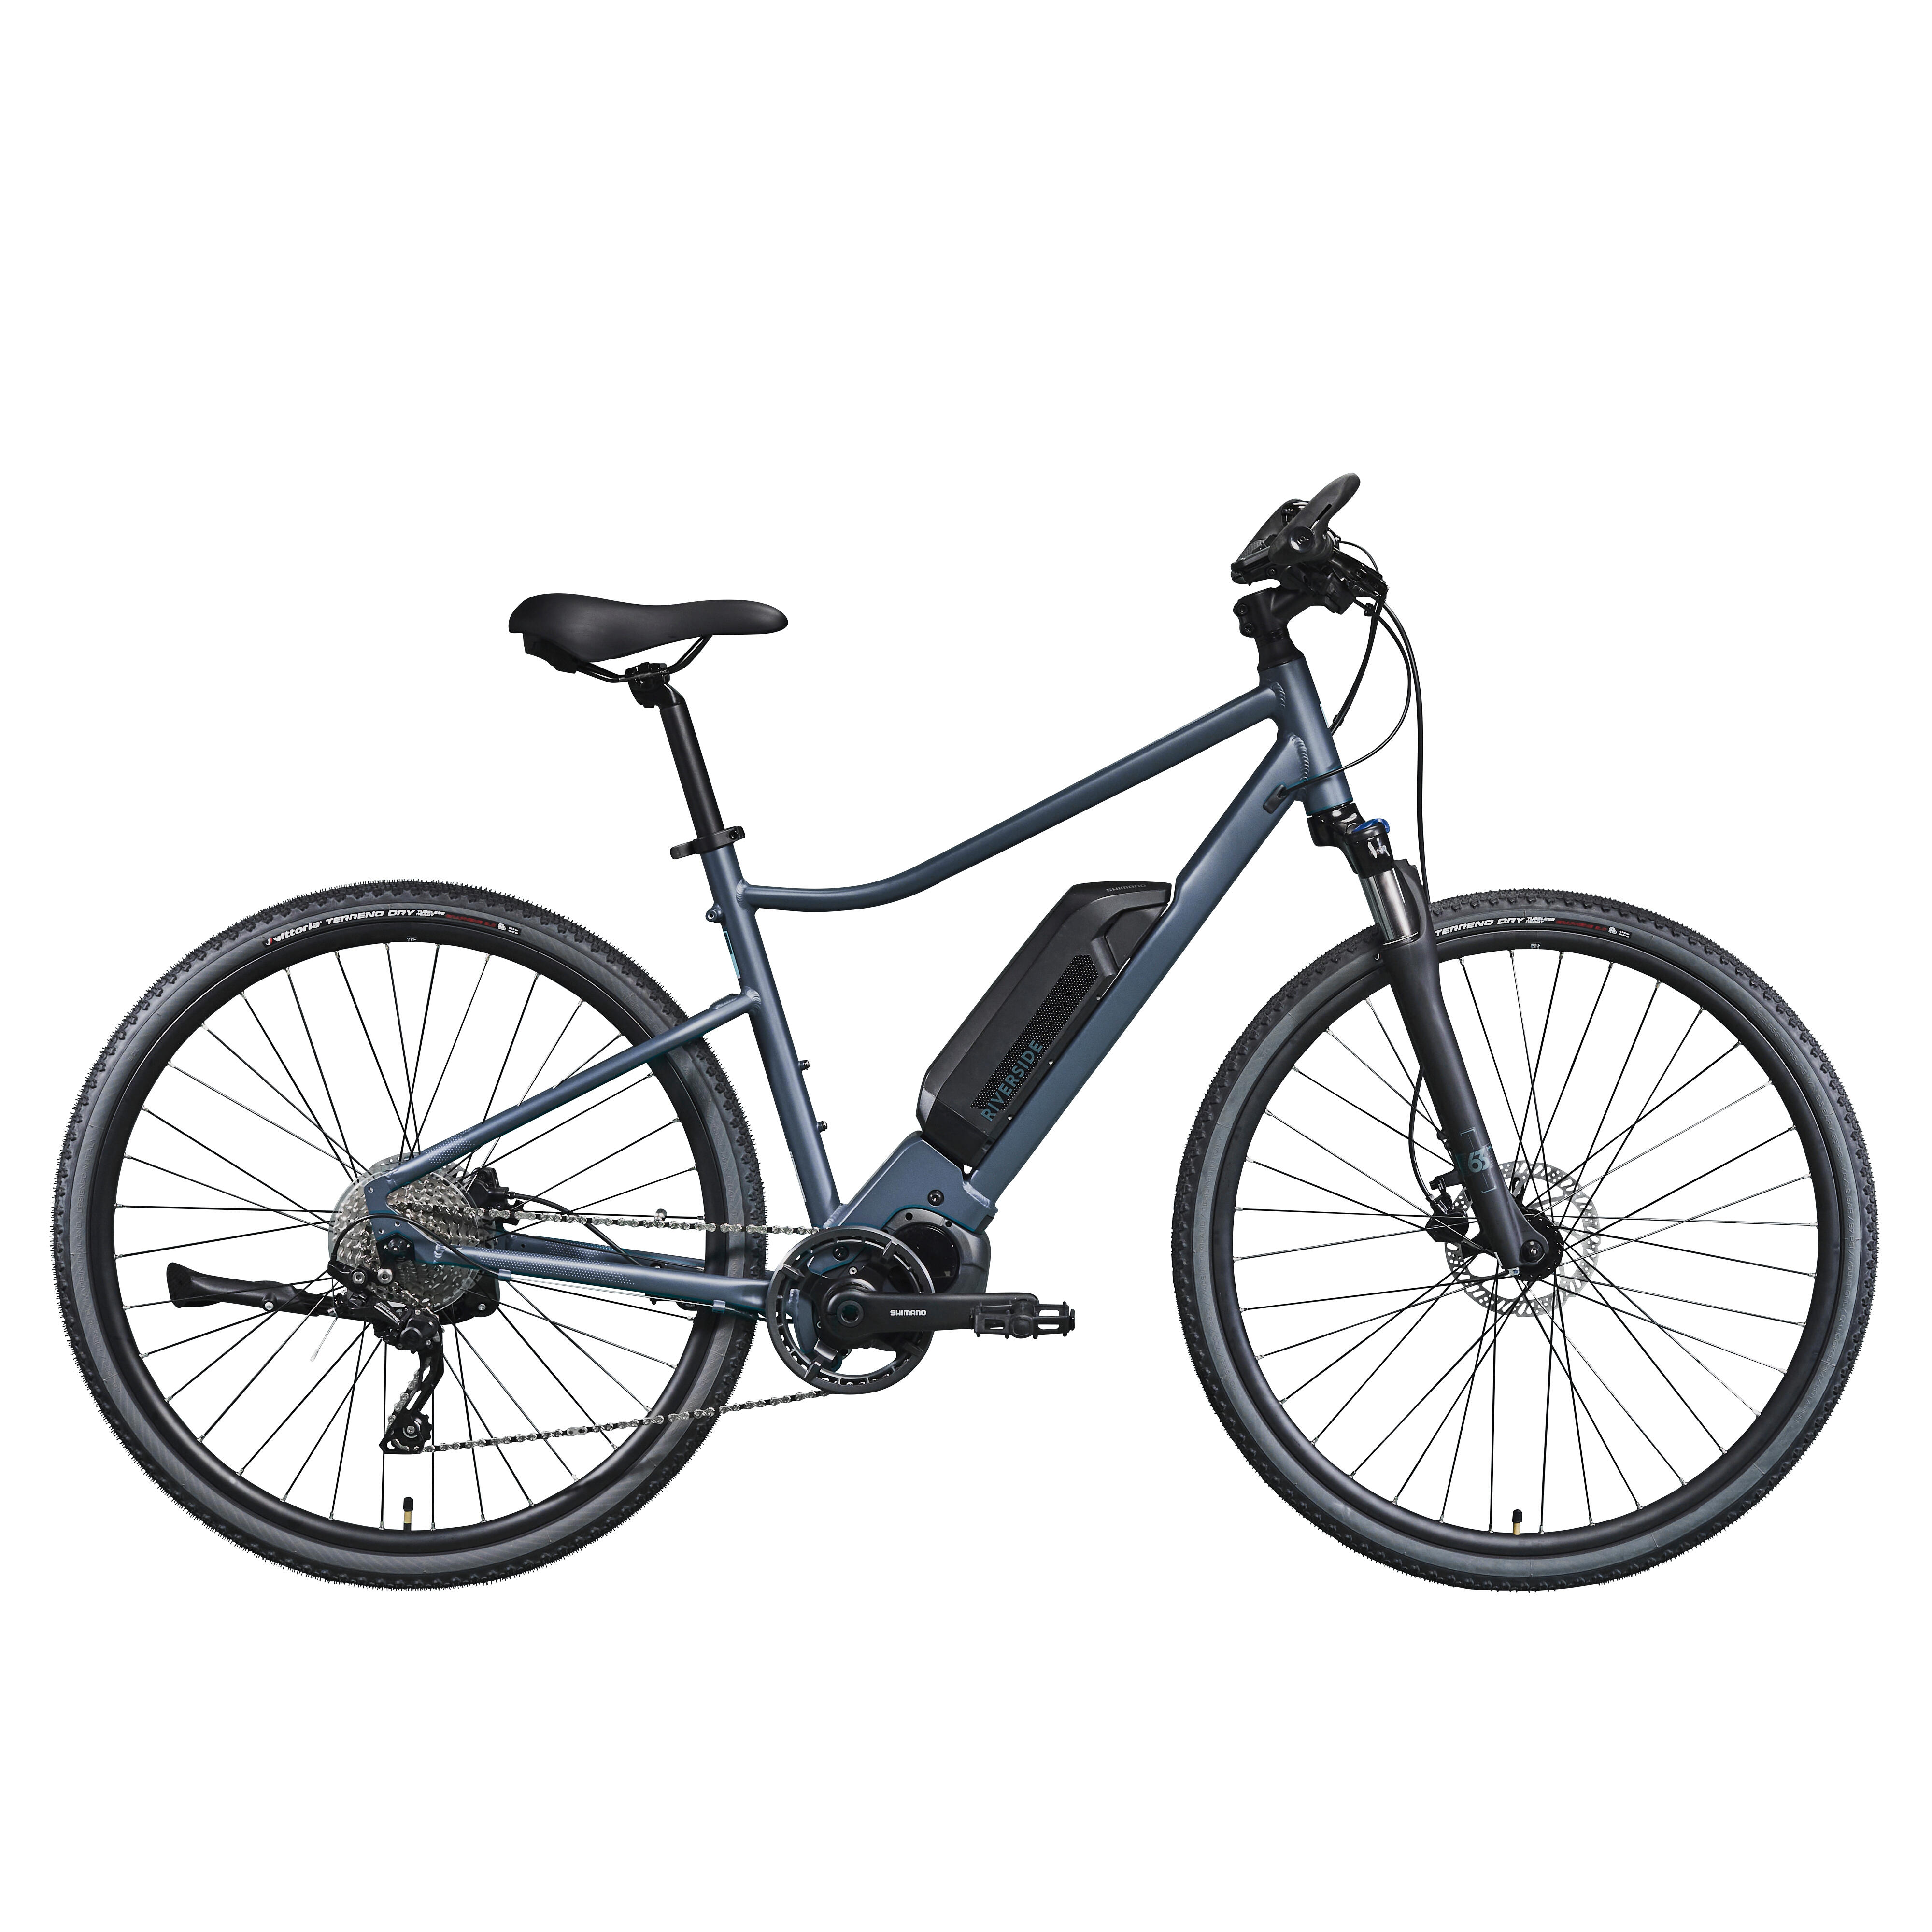 Bicicletă polivalentă electrică RIVERSIDE 540 E Albastru-Negru decathlon.ro